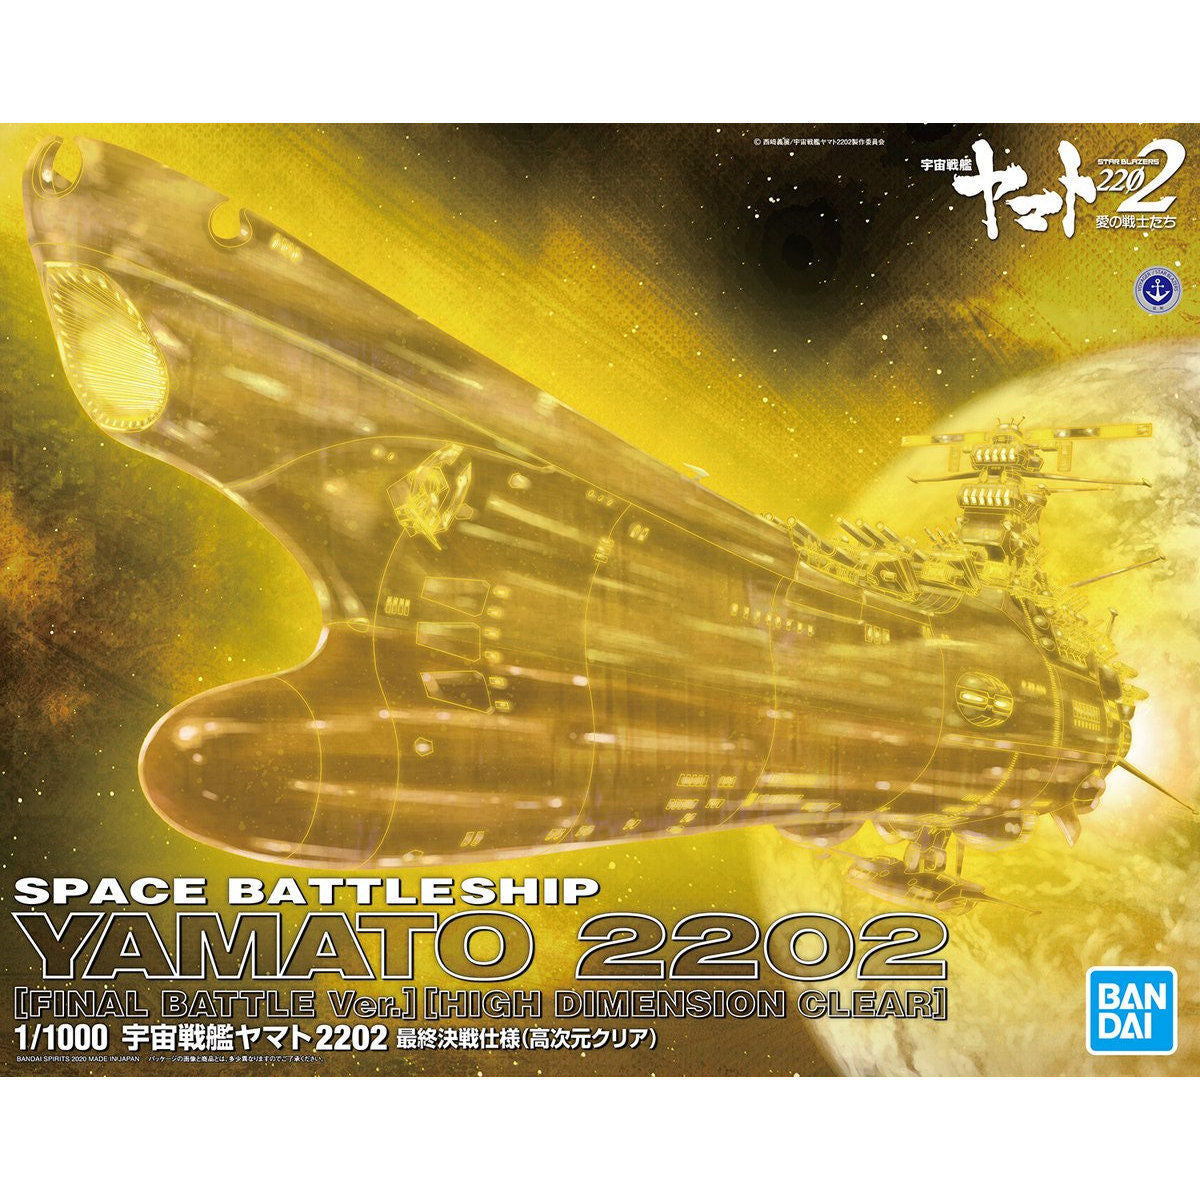 Star Blazers 2202 11000 Space Battleship Yamato 2202 Final Battle Ve